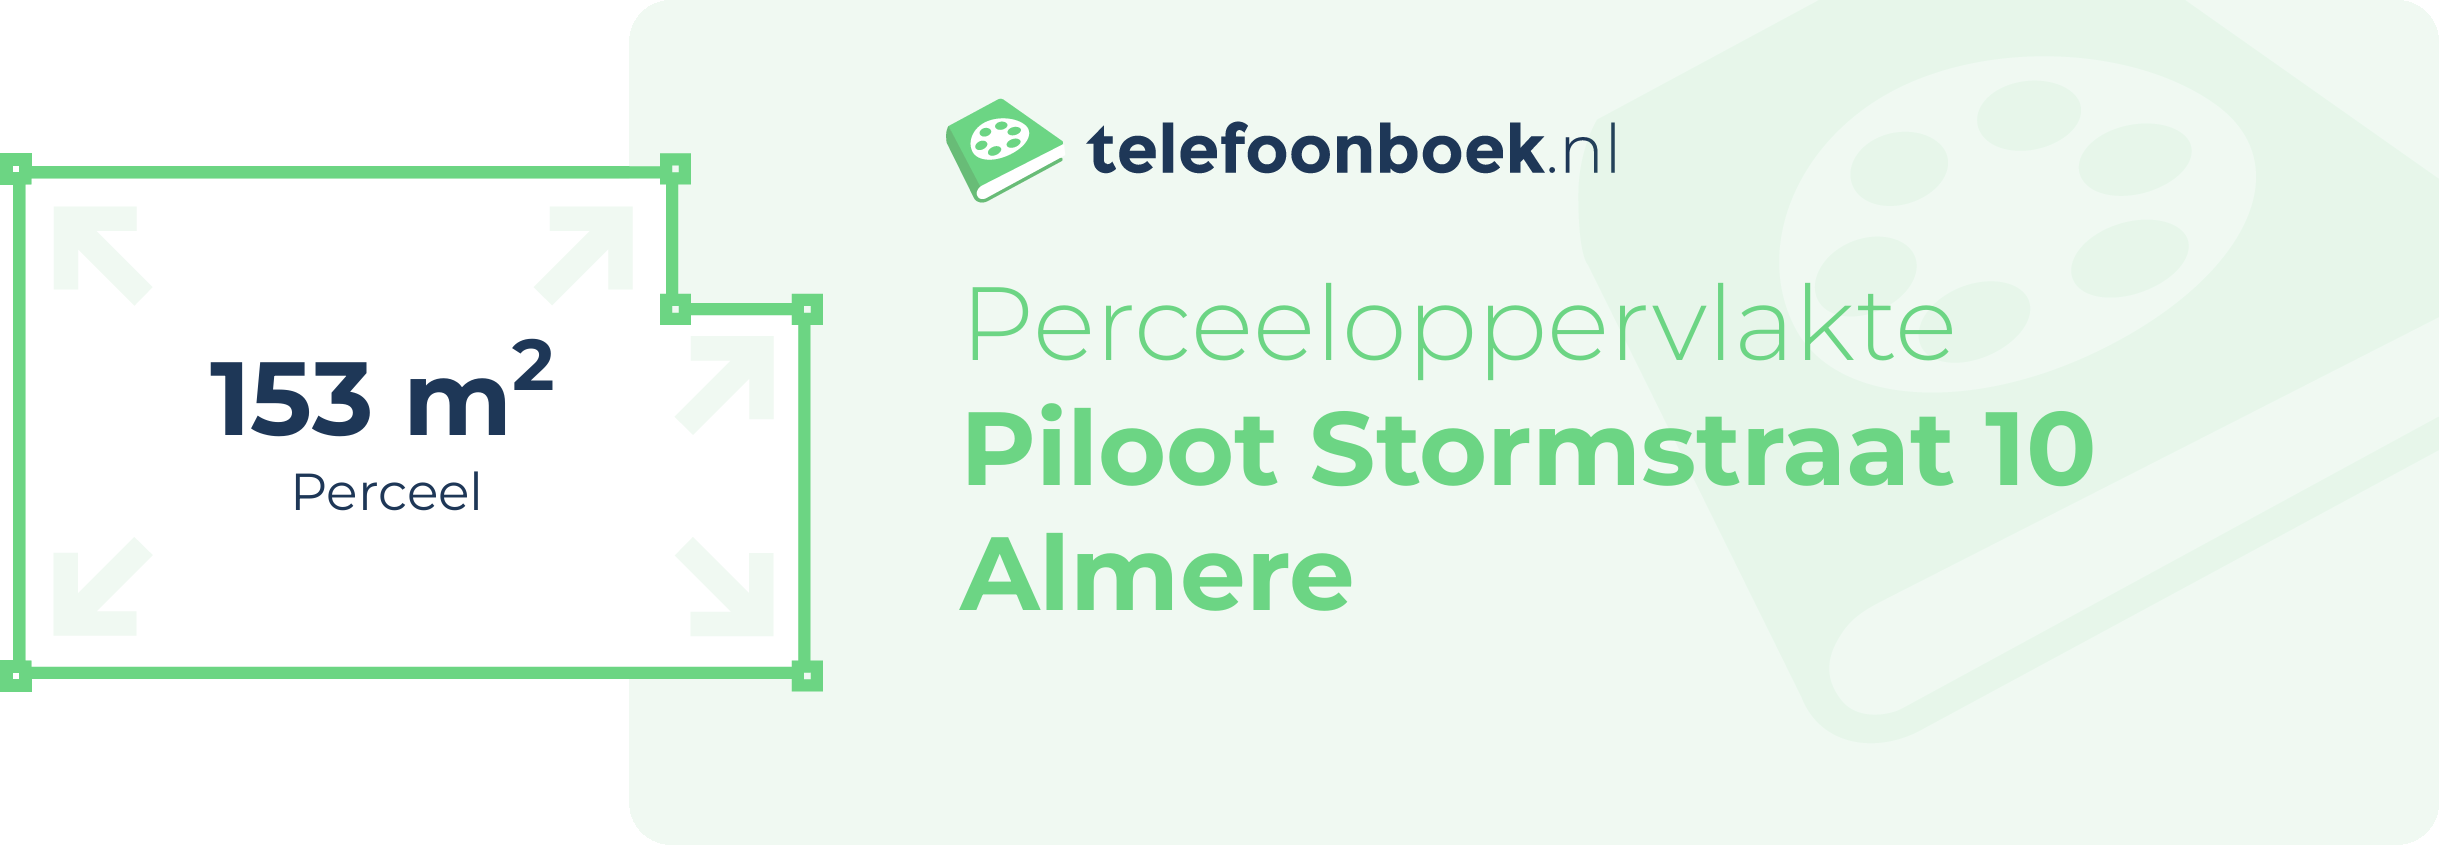 Perceeloppervlakte Piloot Stormstraat 10 Almere